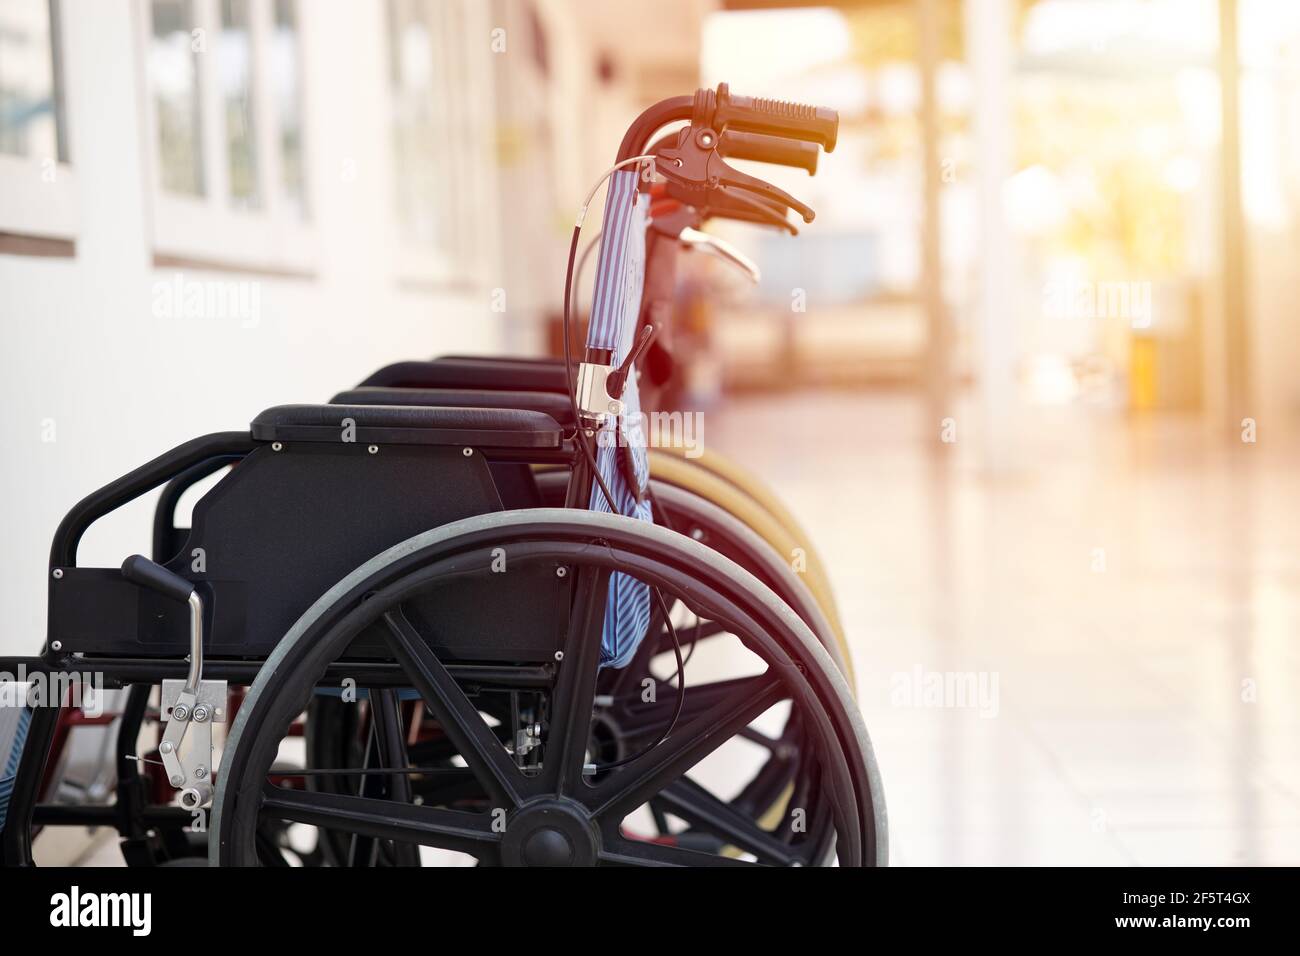 Fauteuil roulant, chaise avec roulettes pour personnes handicapées et soins  aux patients souffrant de maladies hospitalières Photo Stock - Alamy